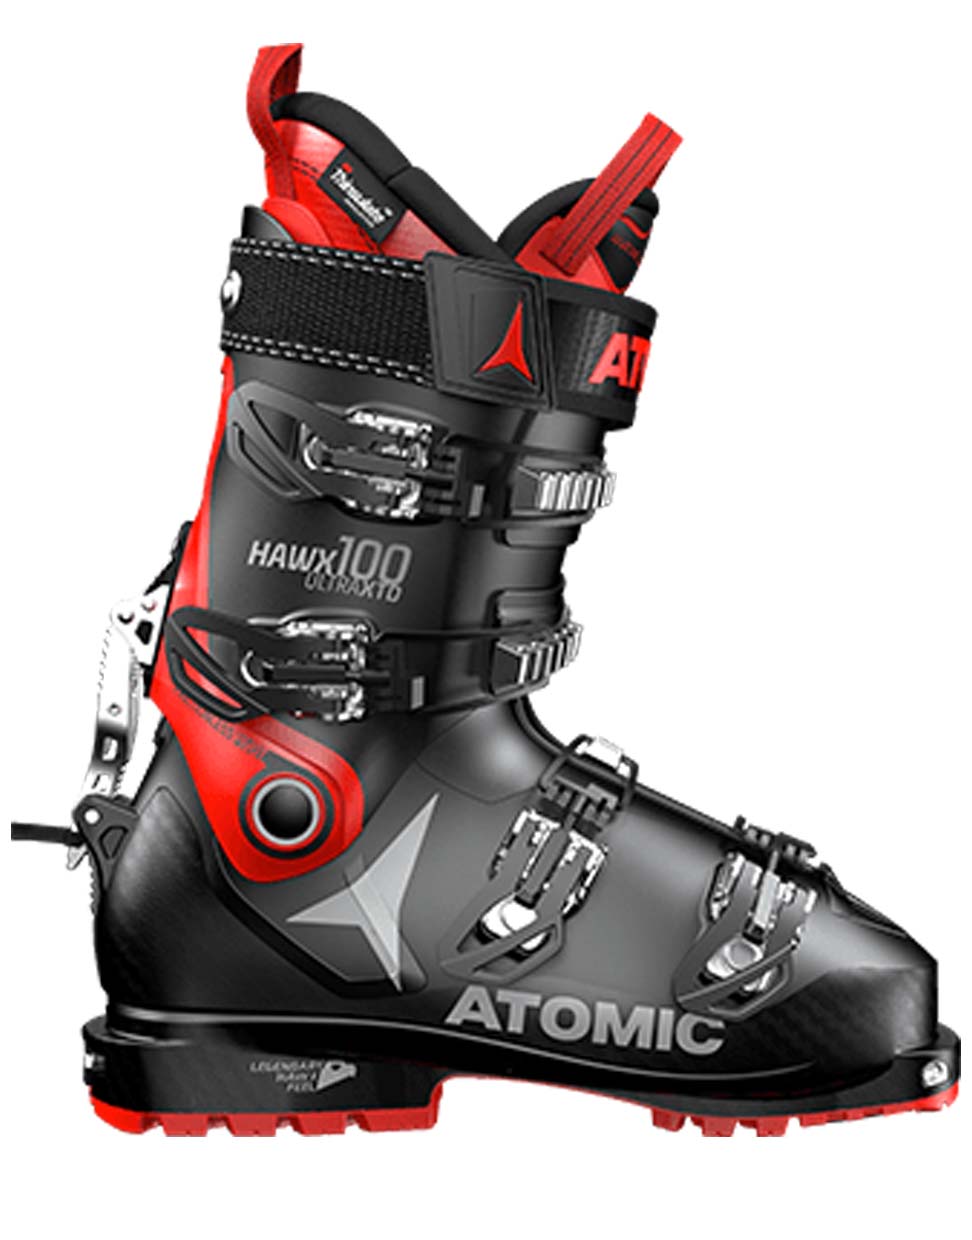 atomic touring ski boots